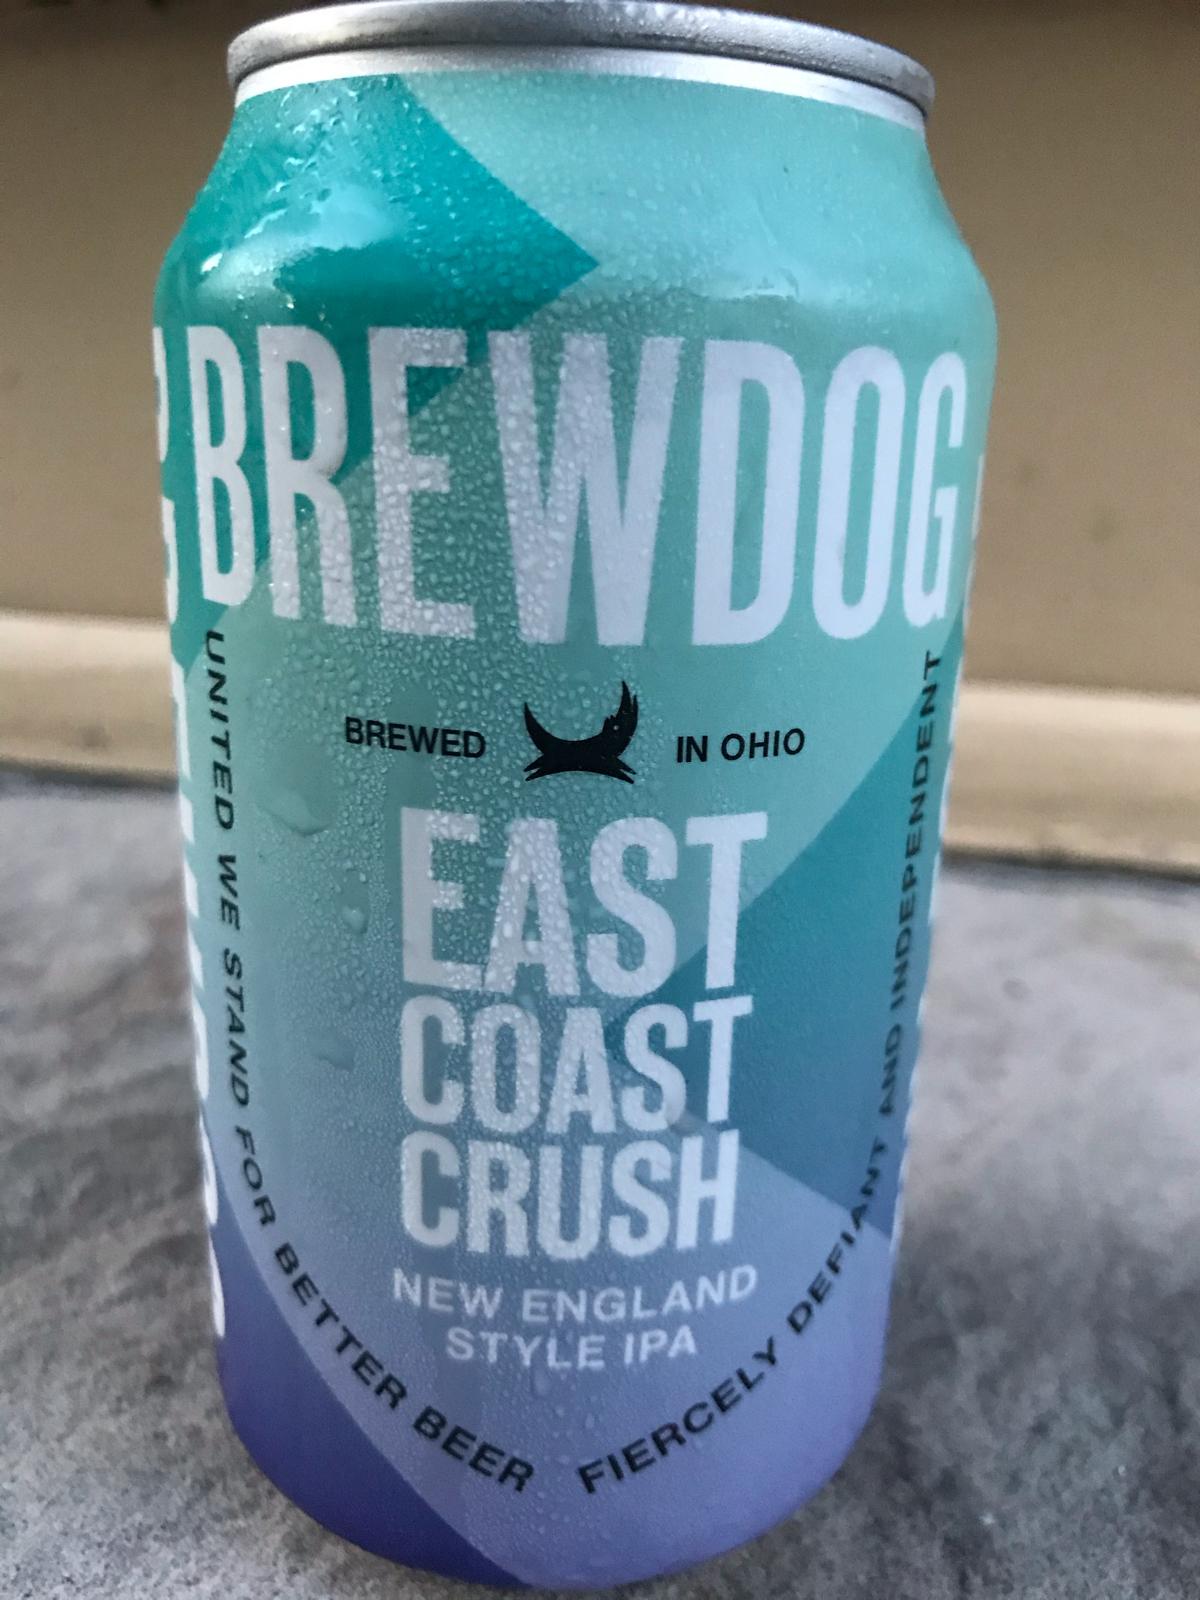 East Coast Crush